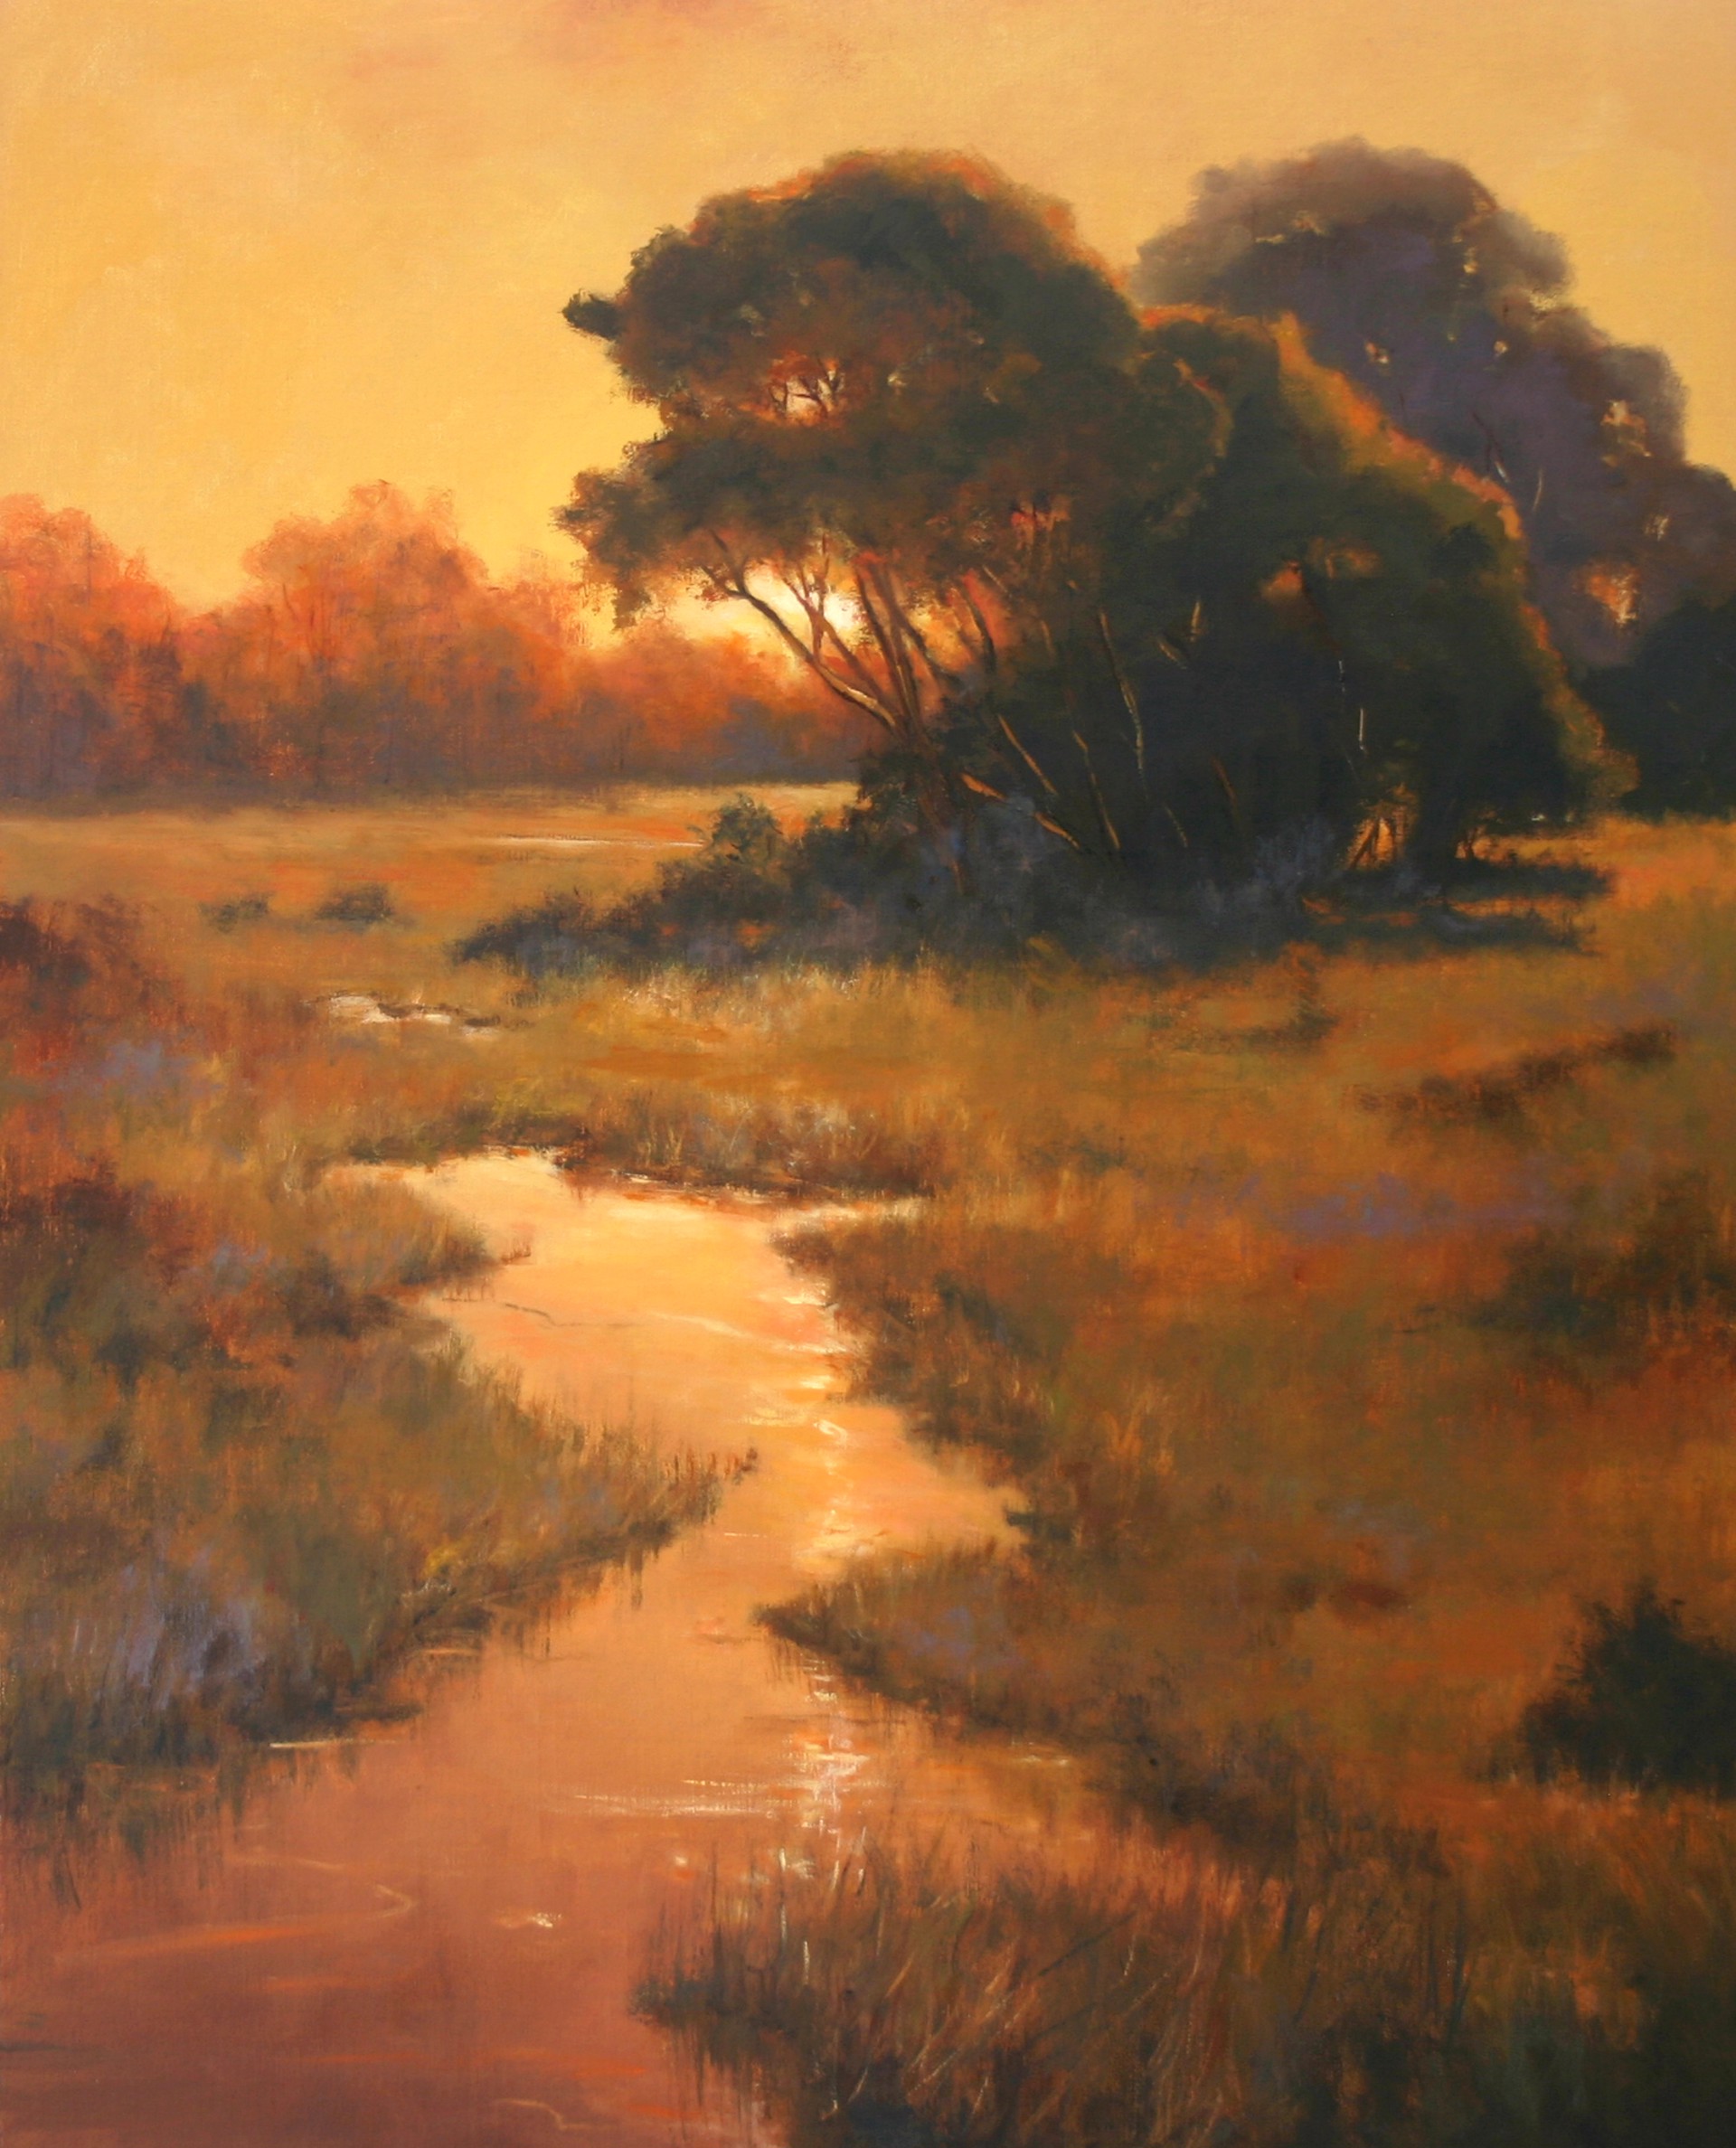 Creekside Oaks by Paula Holtzclaw, opa